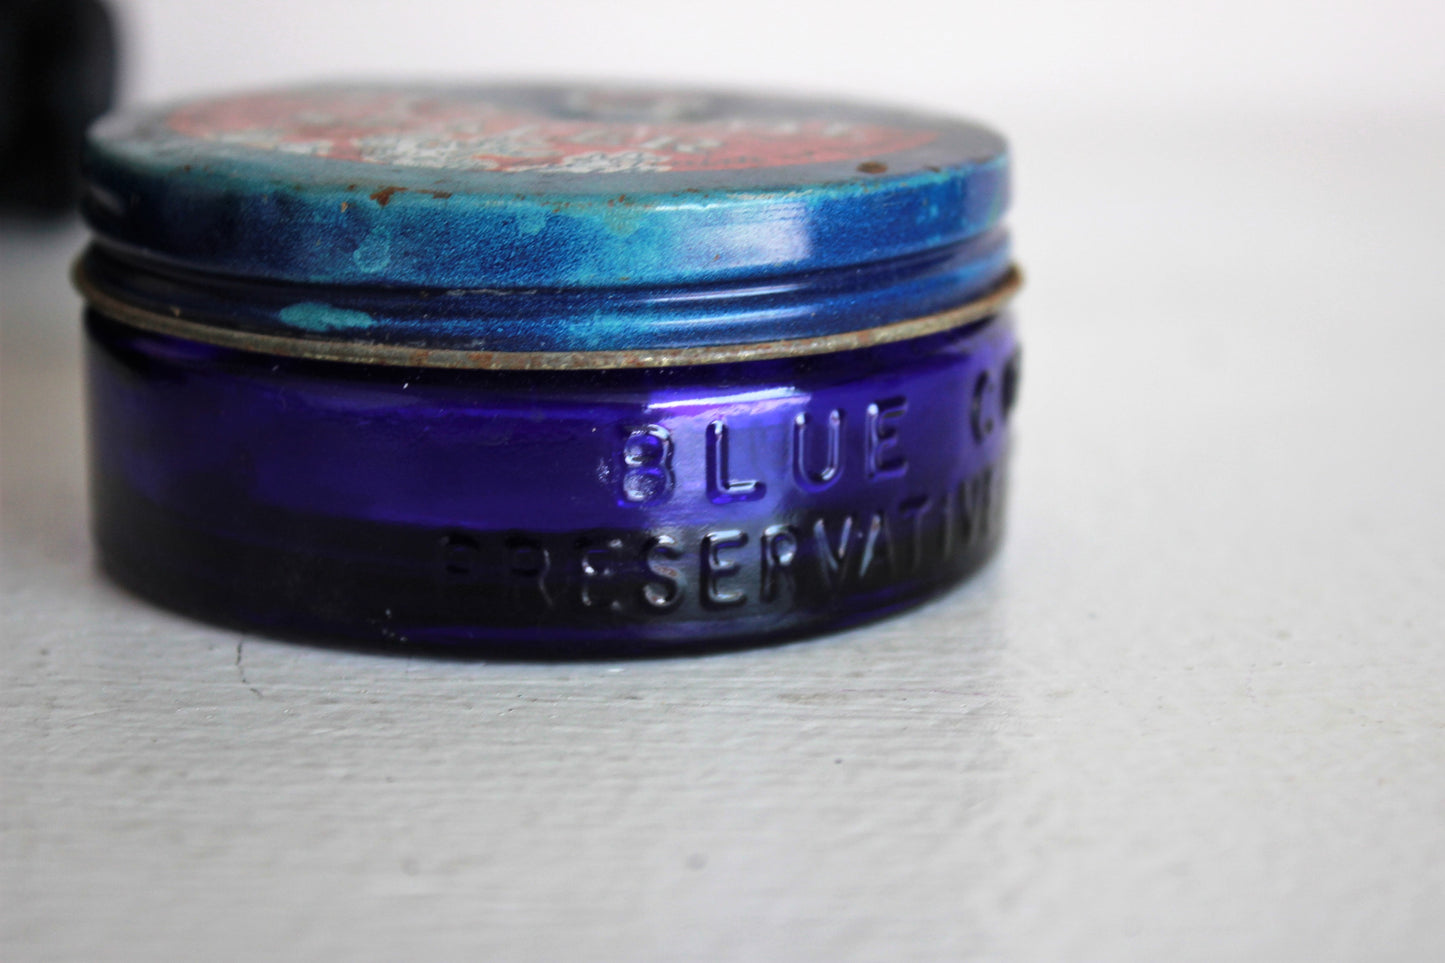 Vintage 1940s 1950s Cobalt Blue Glass Jar / Blue Coral Preservative Sealer